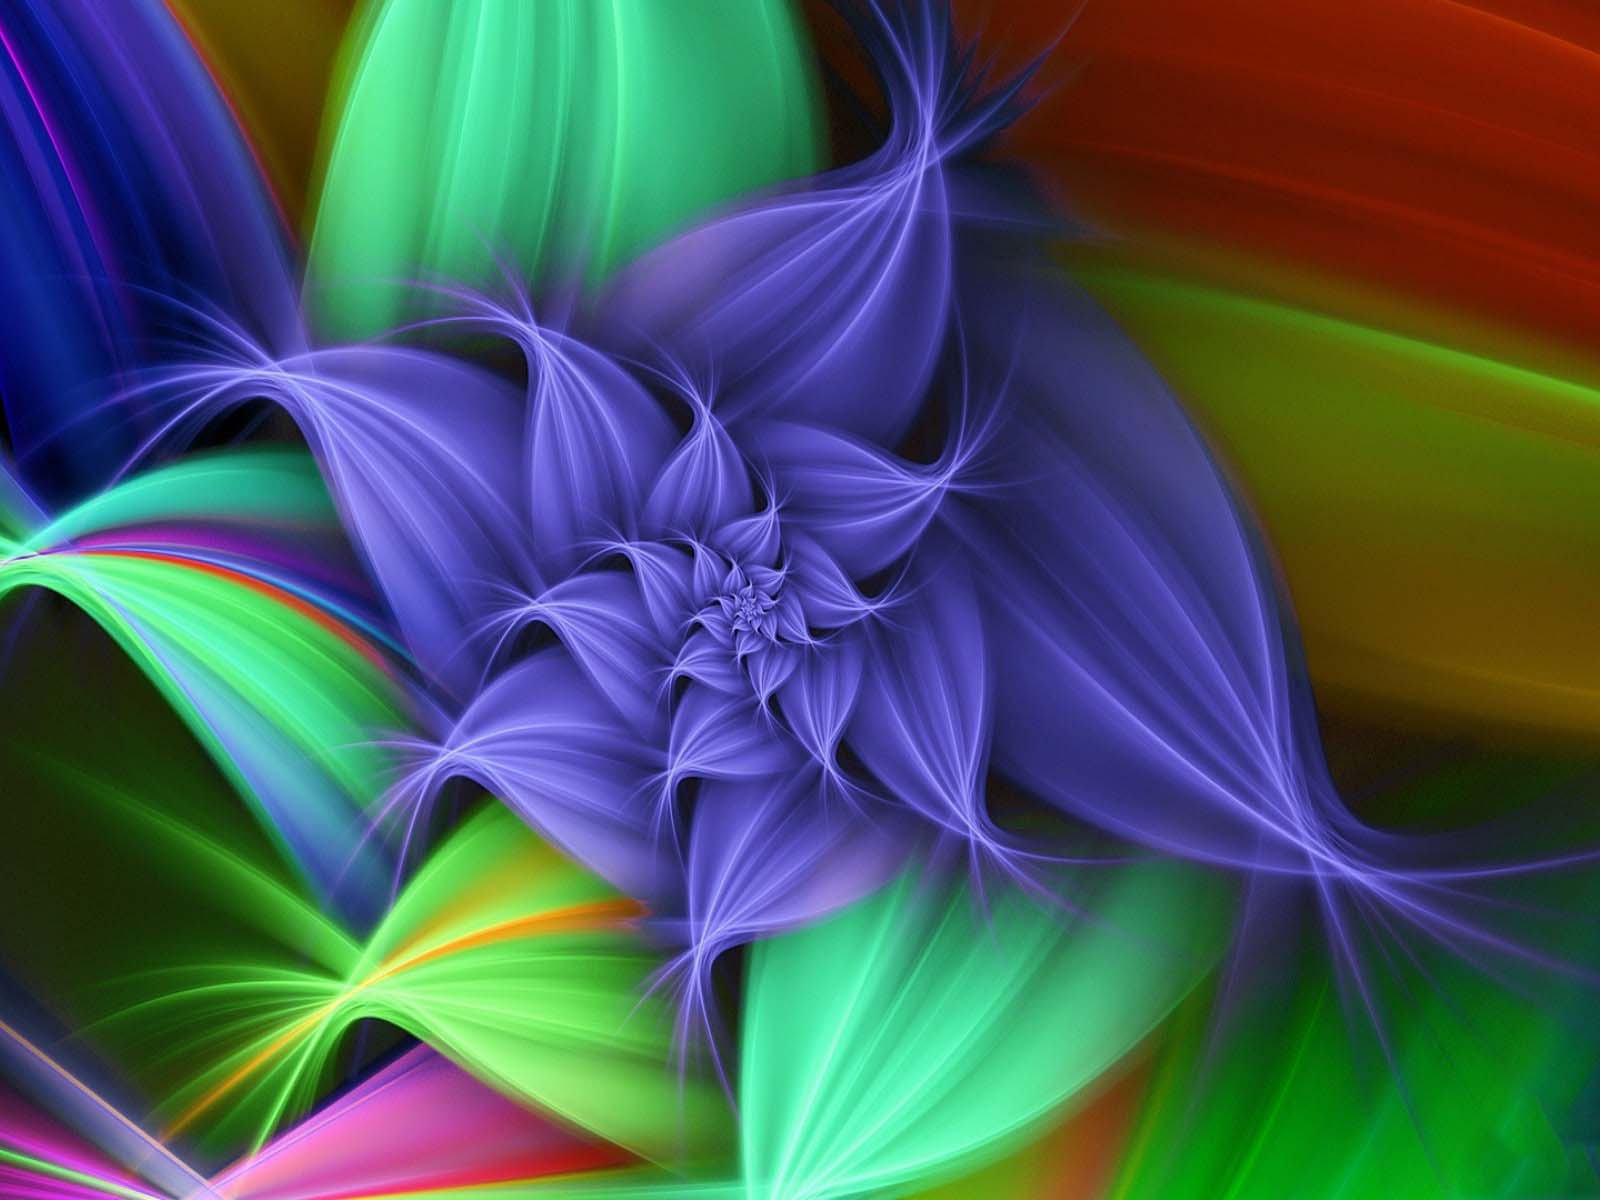 nuevo bonito fondo de pantalla,azul,arte fractal,púrpura,verde,violeta